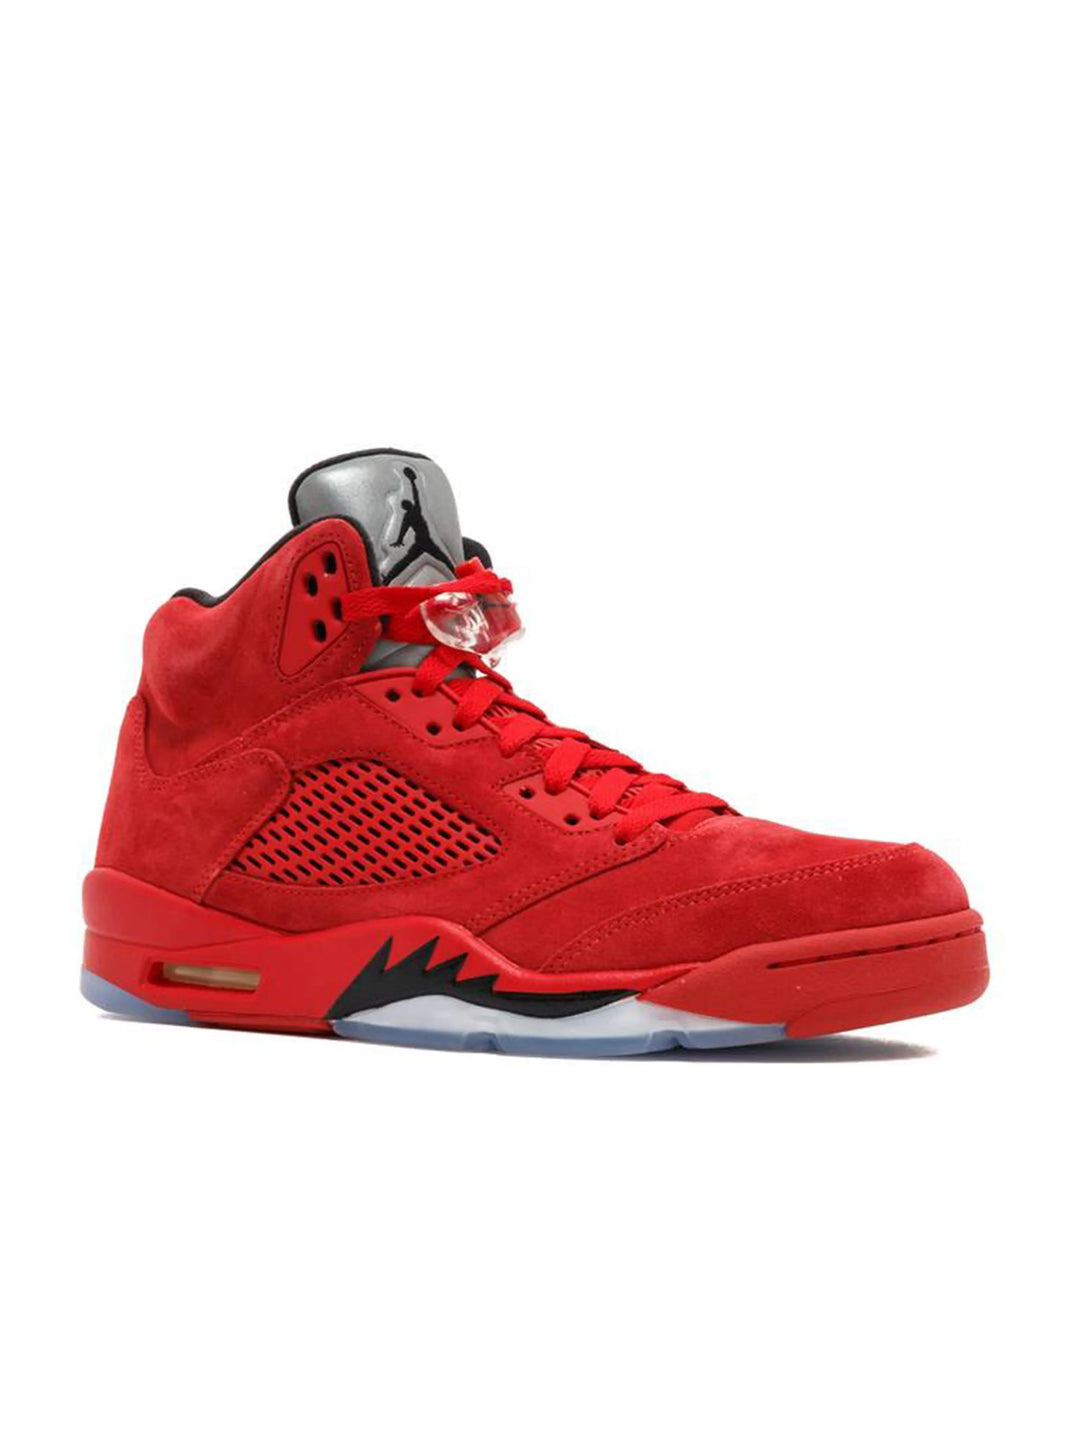 Nike Air Jordan 5 Retro Red Suede Jordan Brand